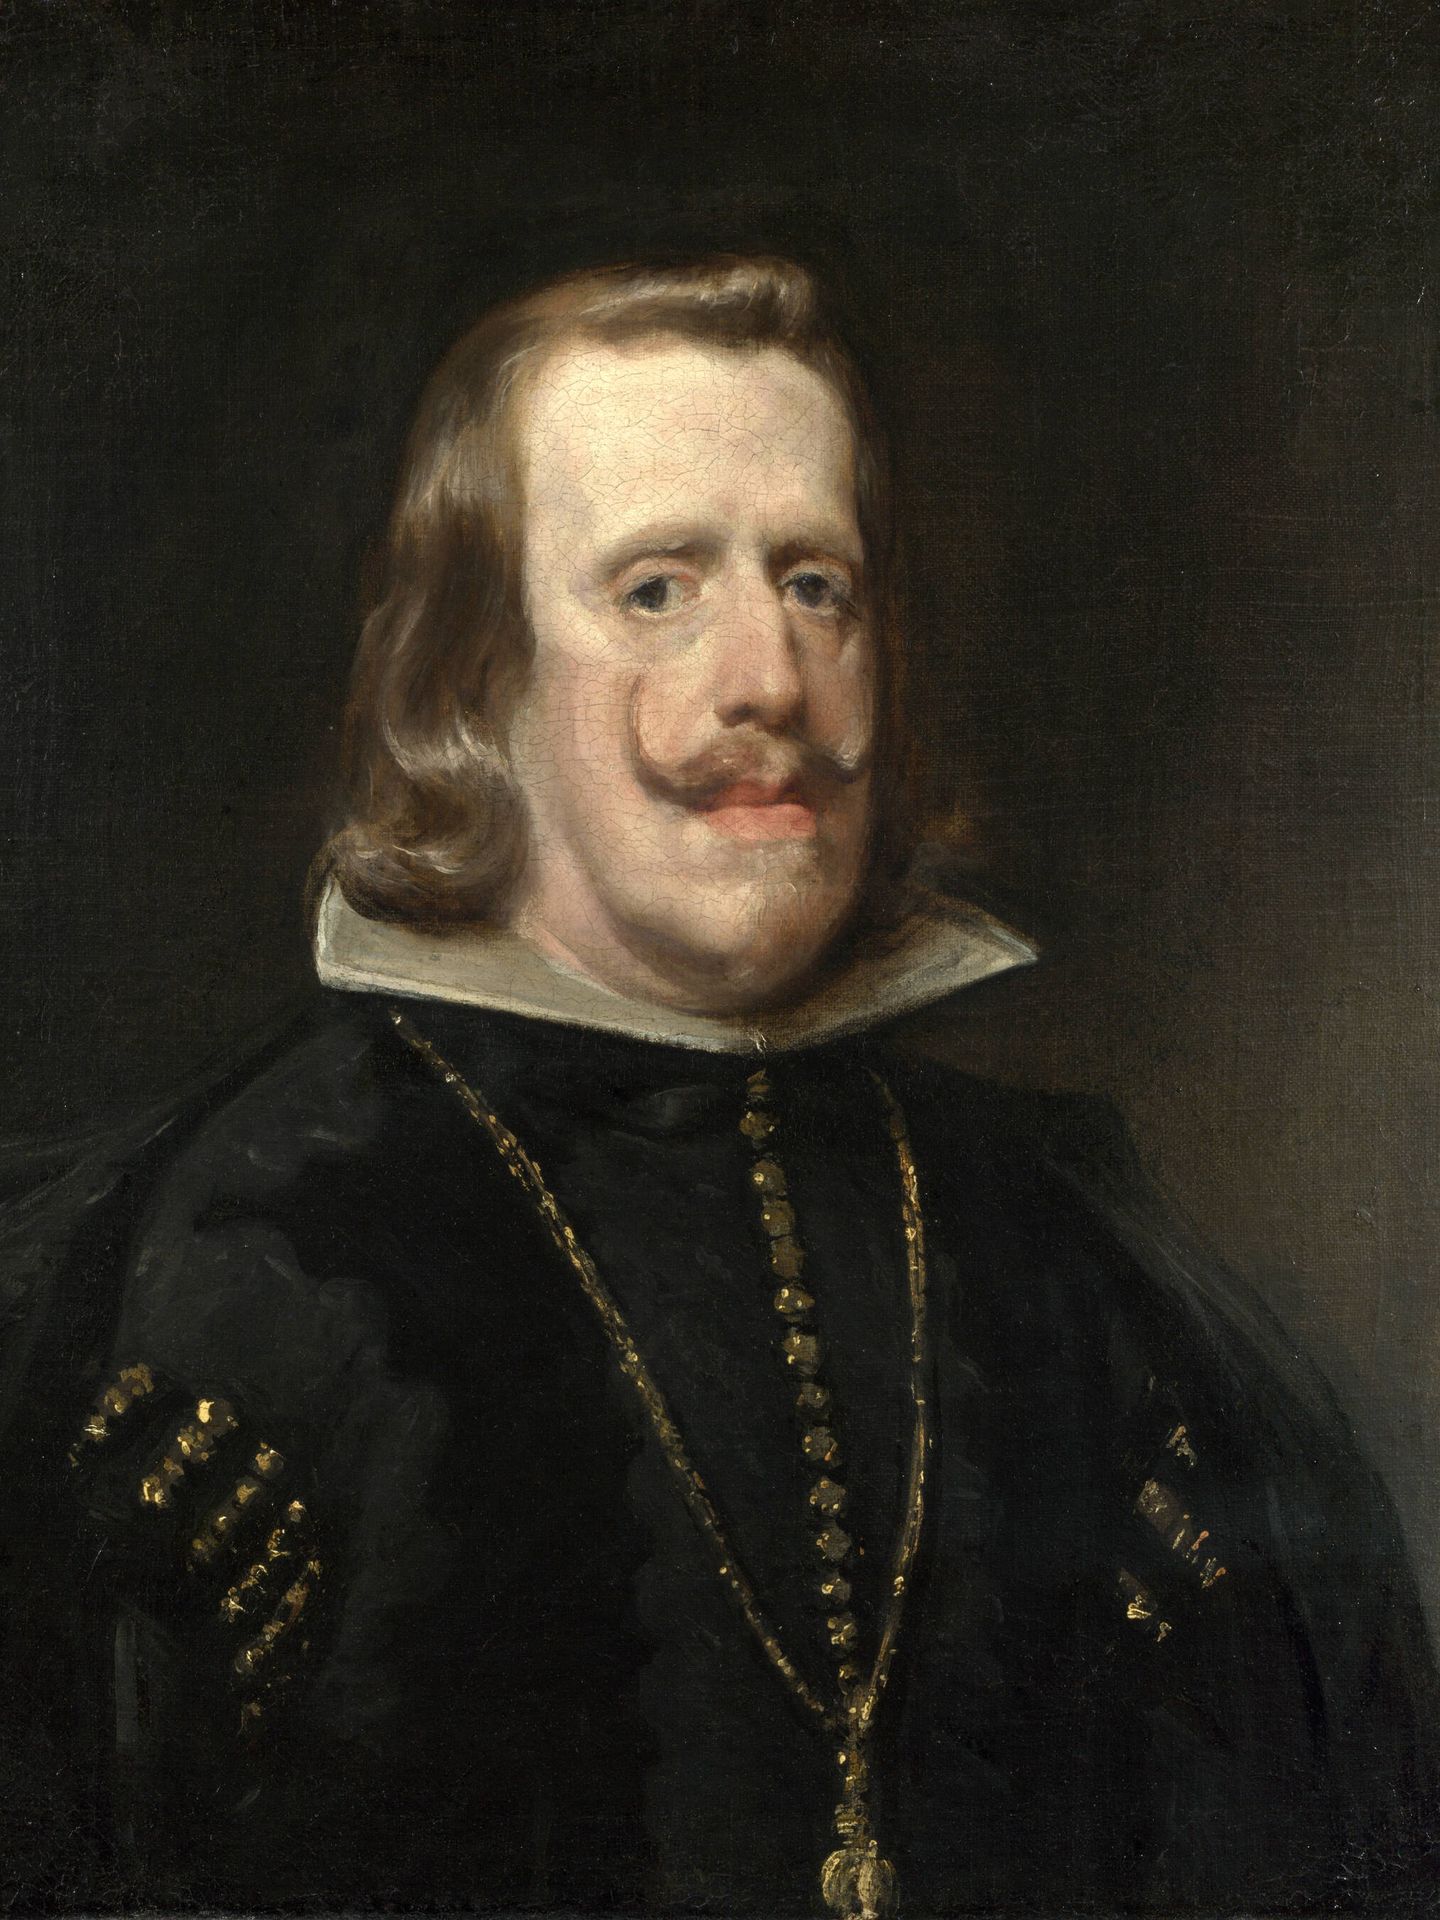 Retrato de Felipe IV realizado por Diego Velázquez. (Dominio público)